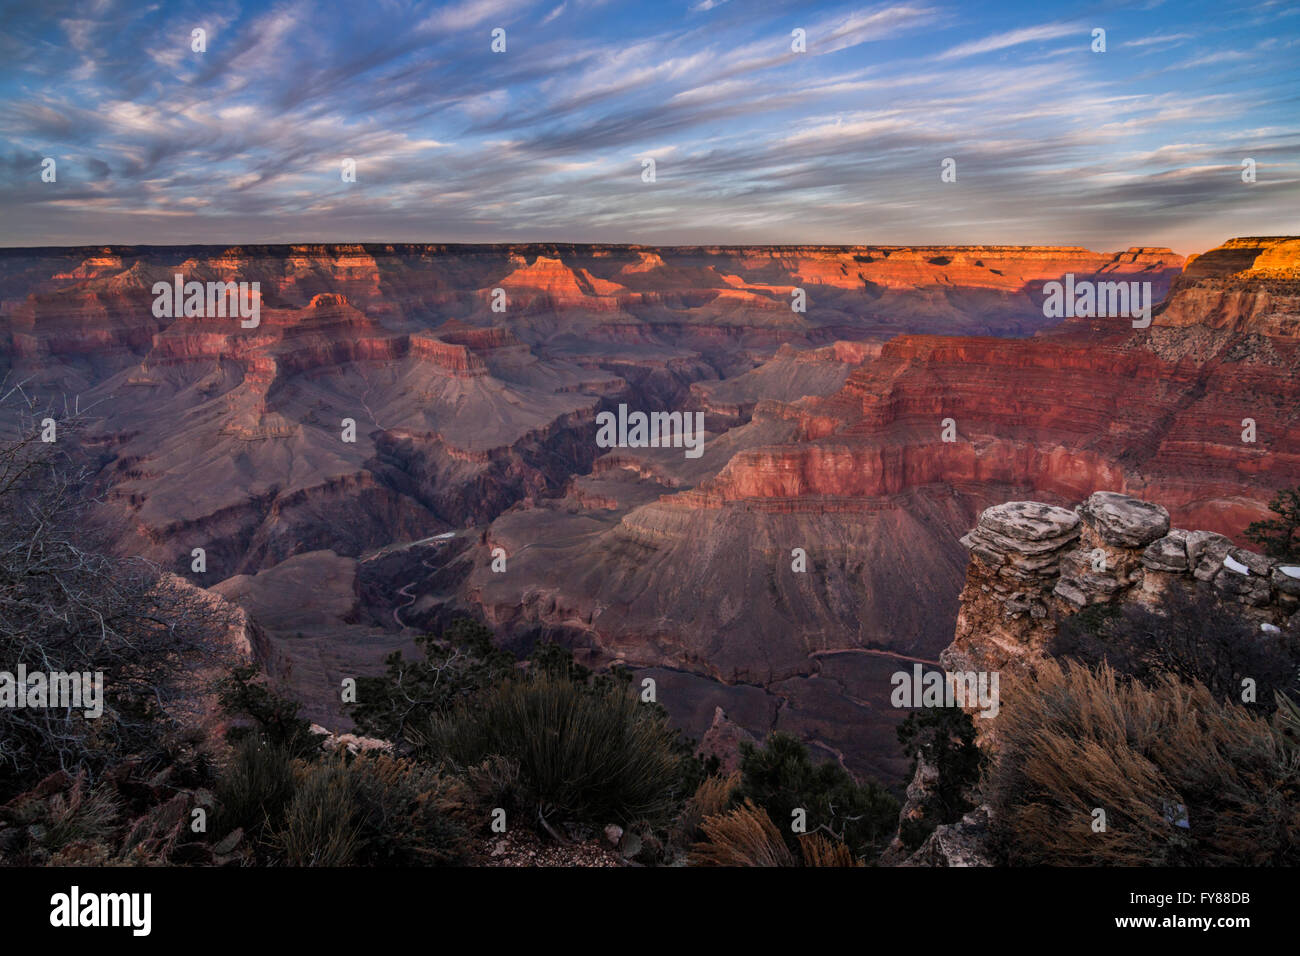 Les derniers rayons du soleil couchant illuminent le bord du Grand Canyon en Arizona Banque D'Images